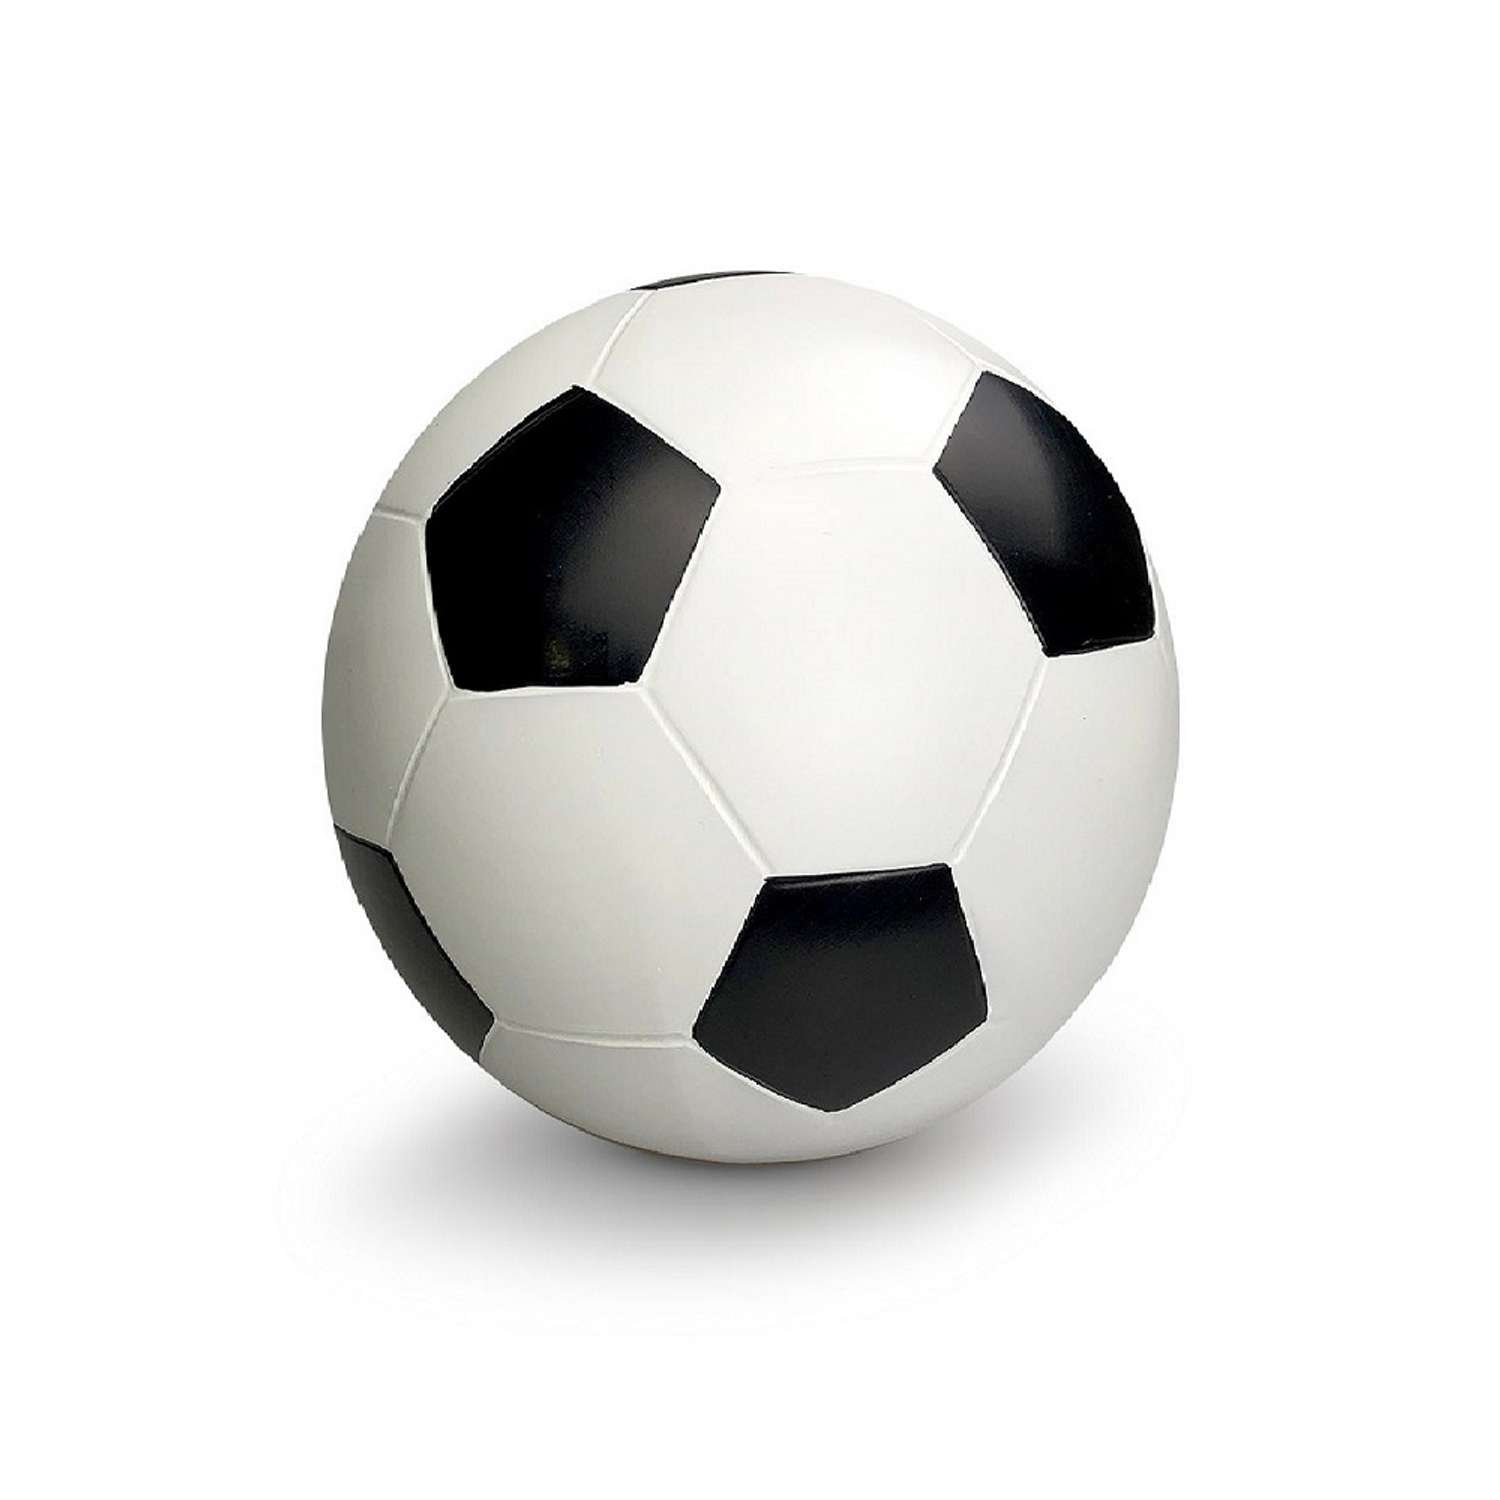 Мяч детский резиновый S+S для игры дома и на улице диаметр 20 см - фото 1